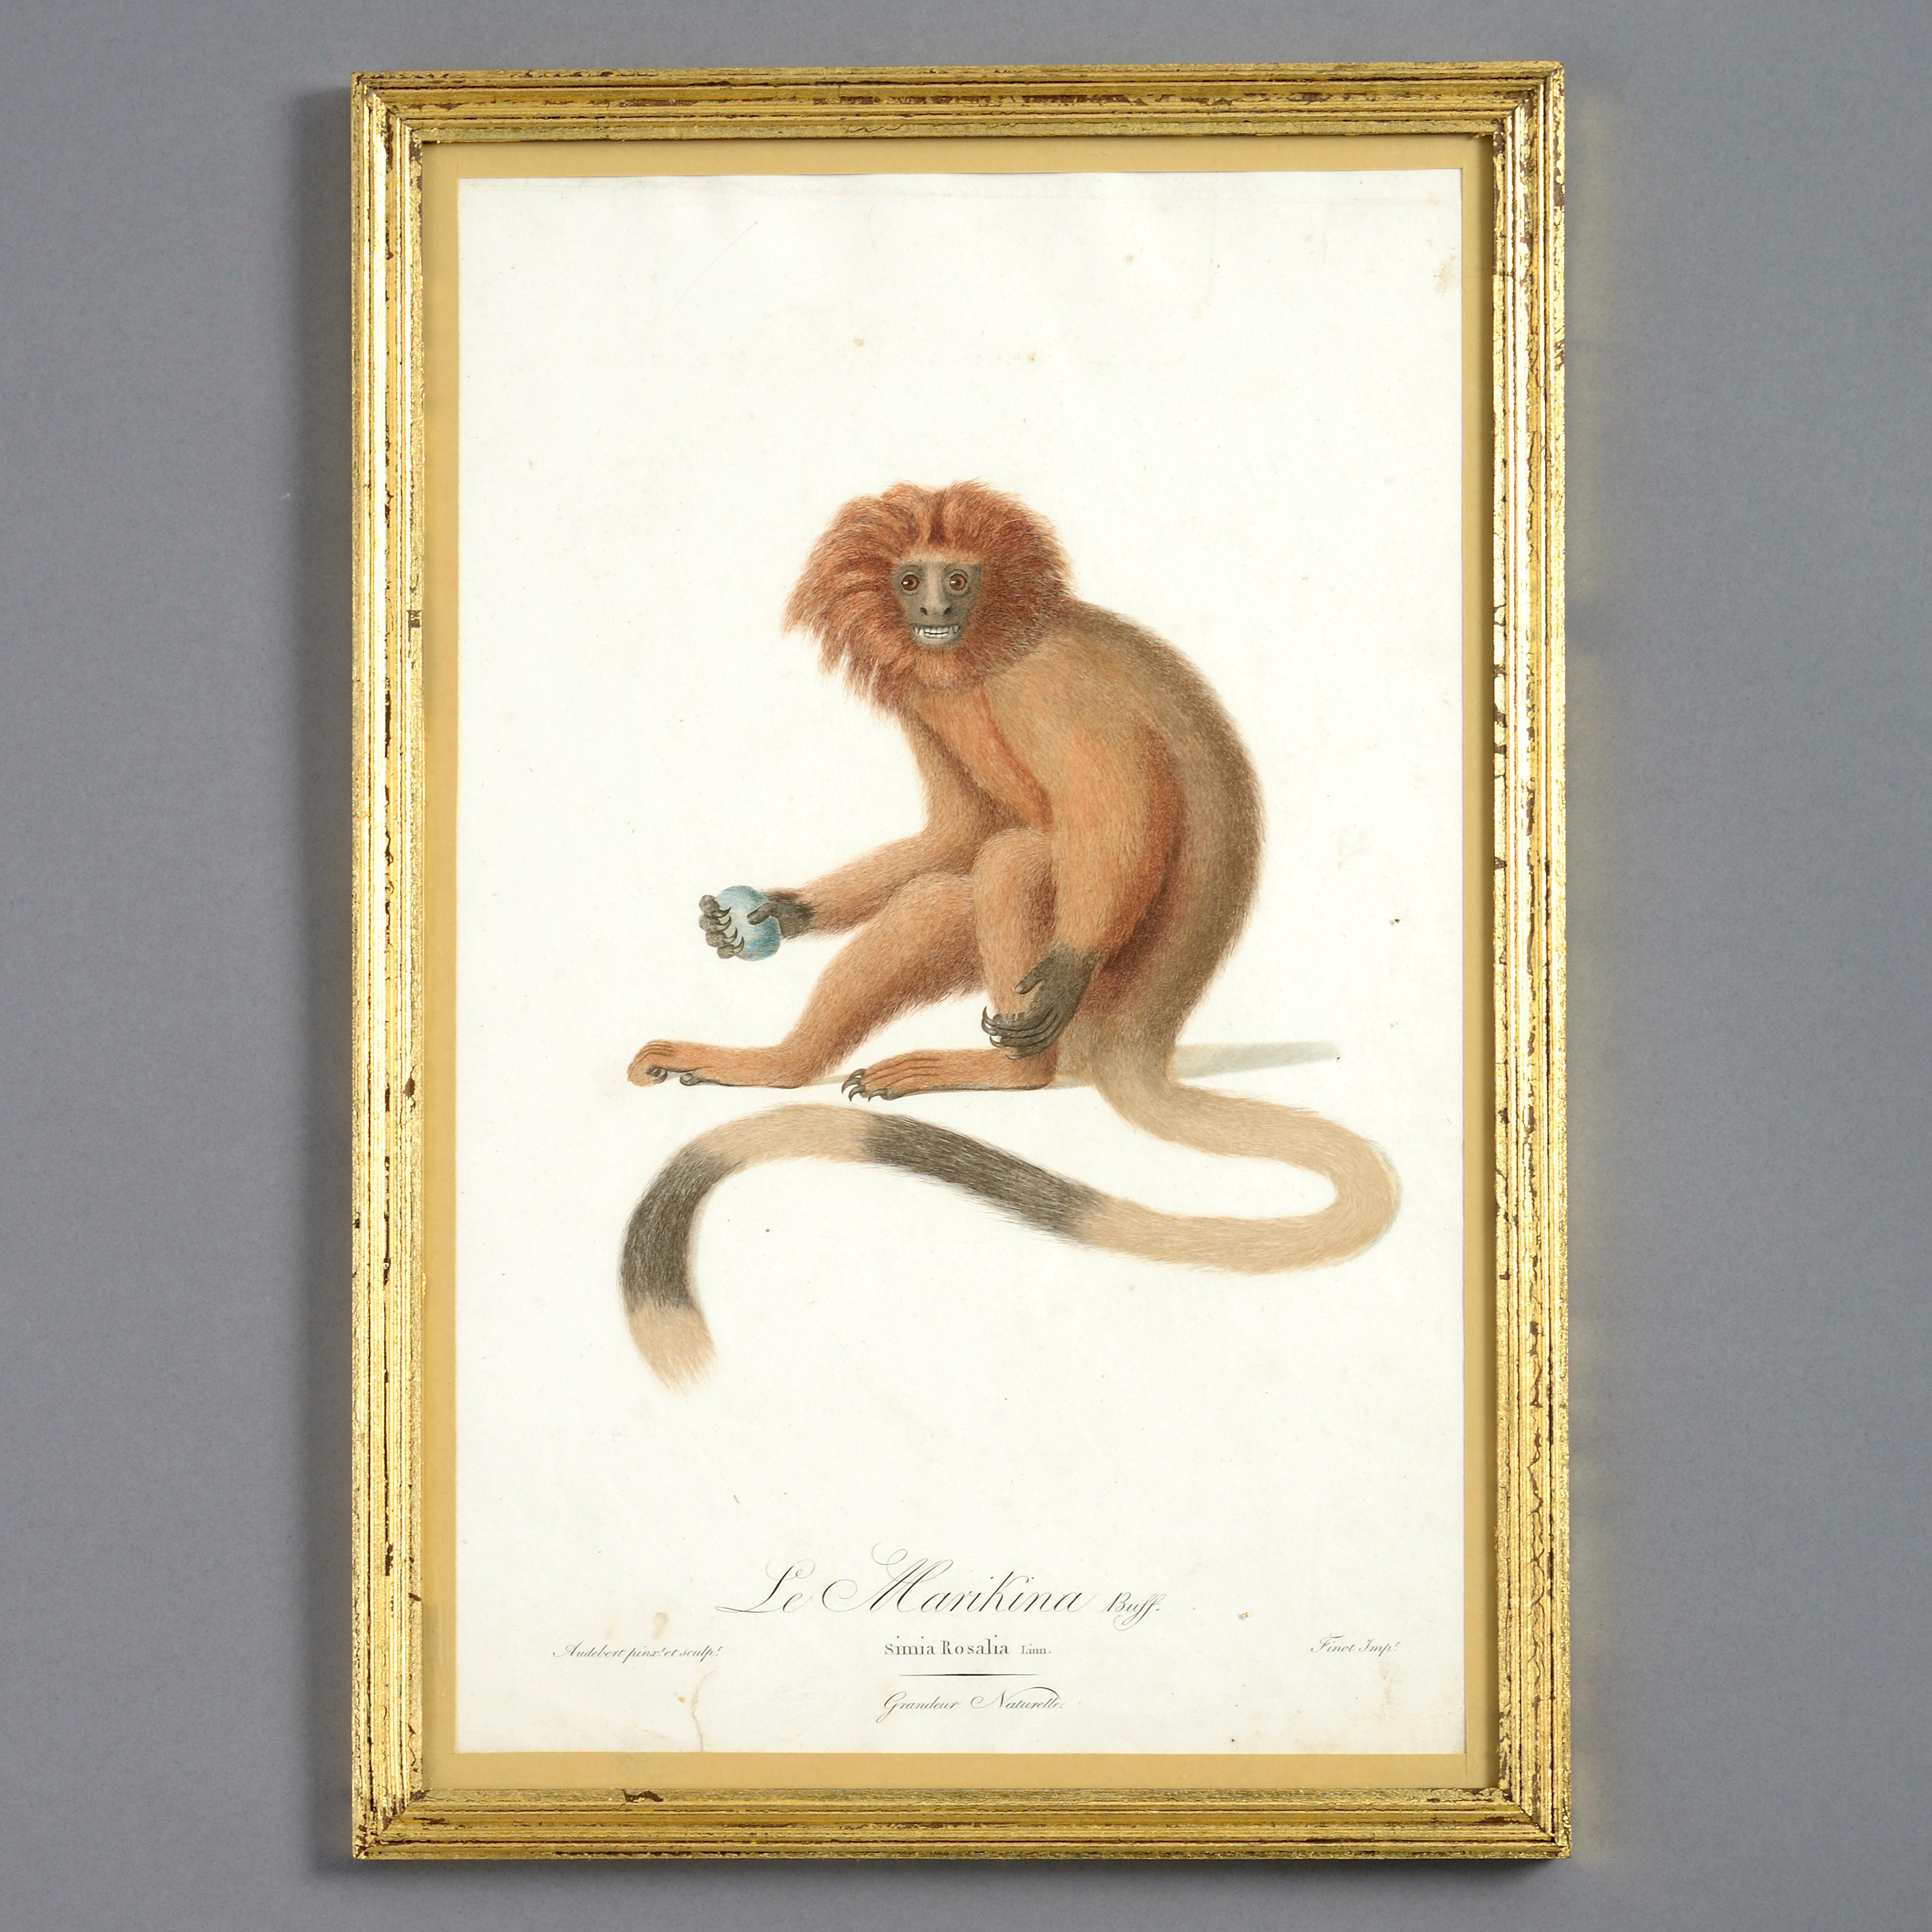 Handkolorierte Affengravuren des späten 18. Jahrhunderts (Naturalismus), Print, von Unknown